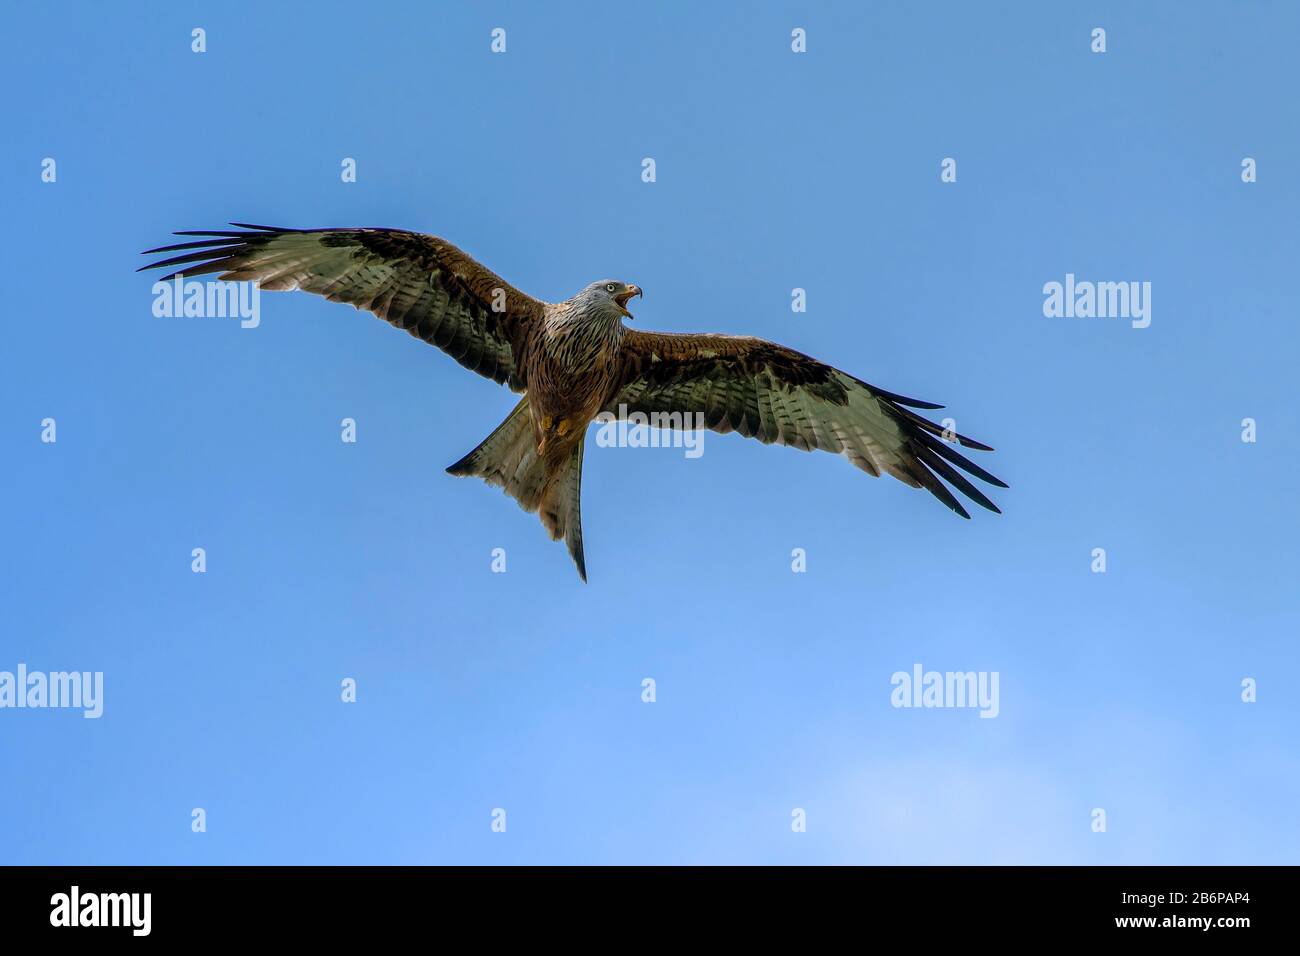 Red Kite-Milvus milvus calls in flight. Stock Photo